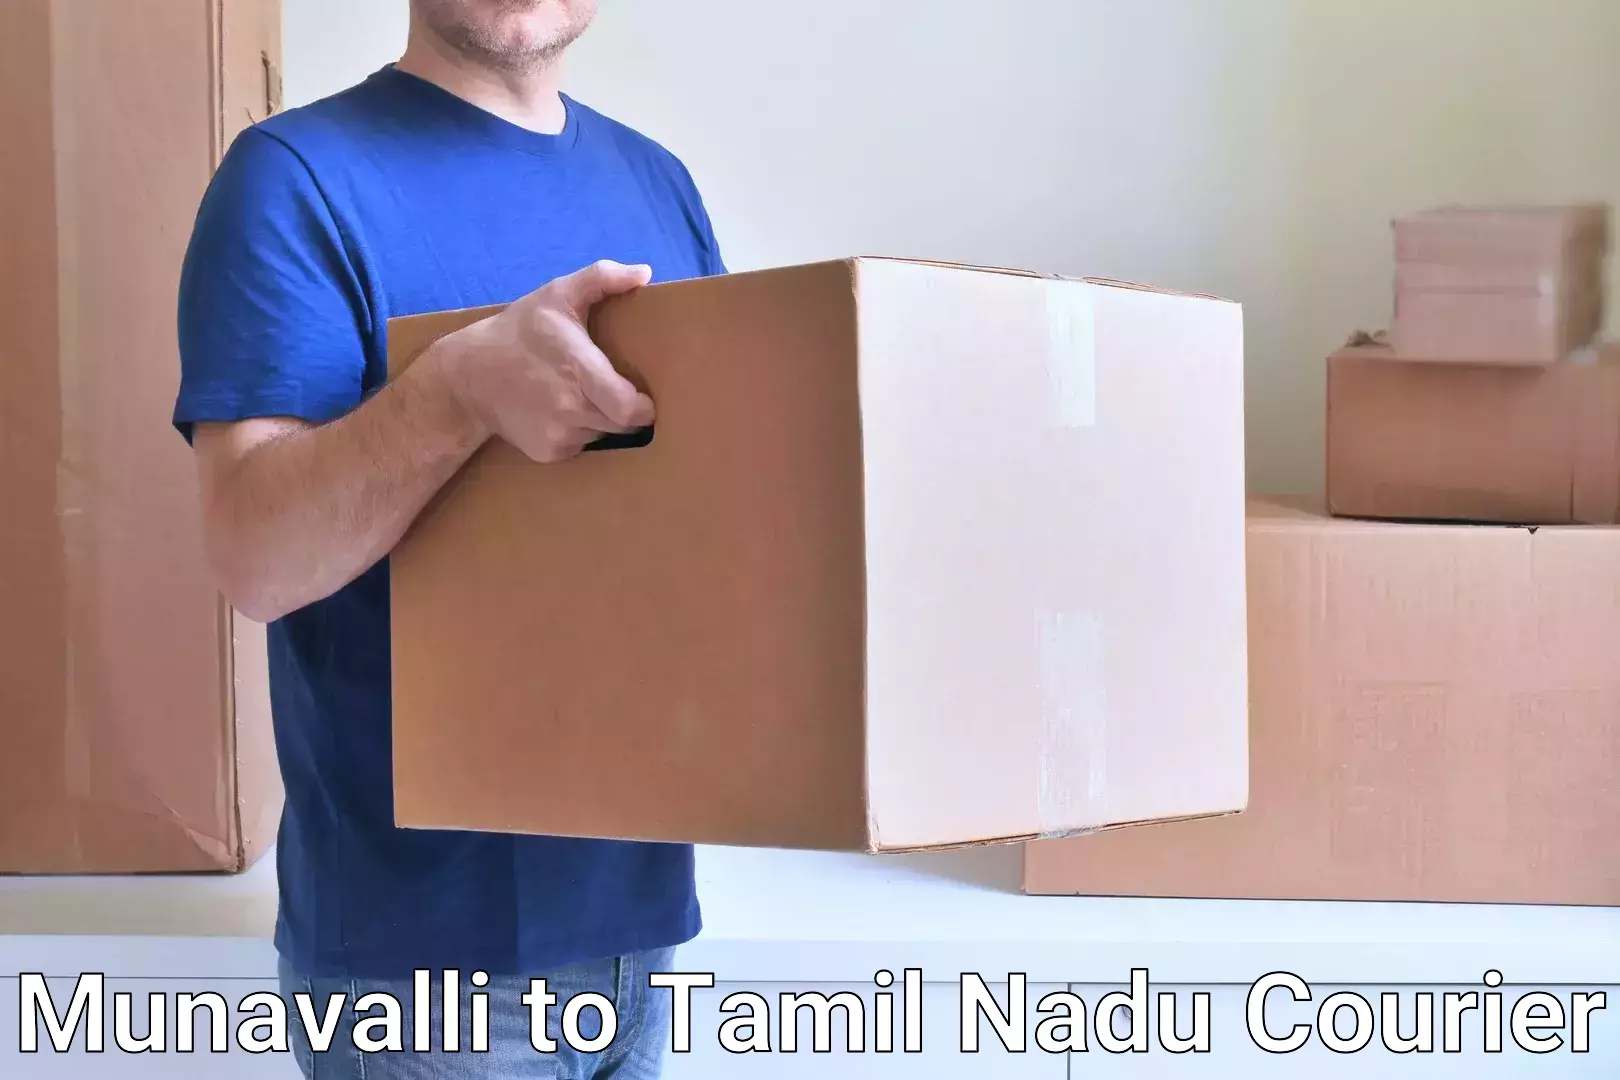 Cargo delivery service Munavalli to Coonoor